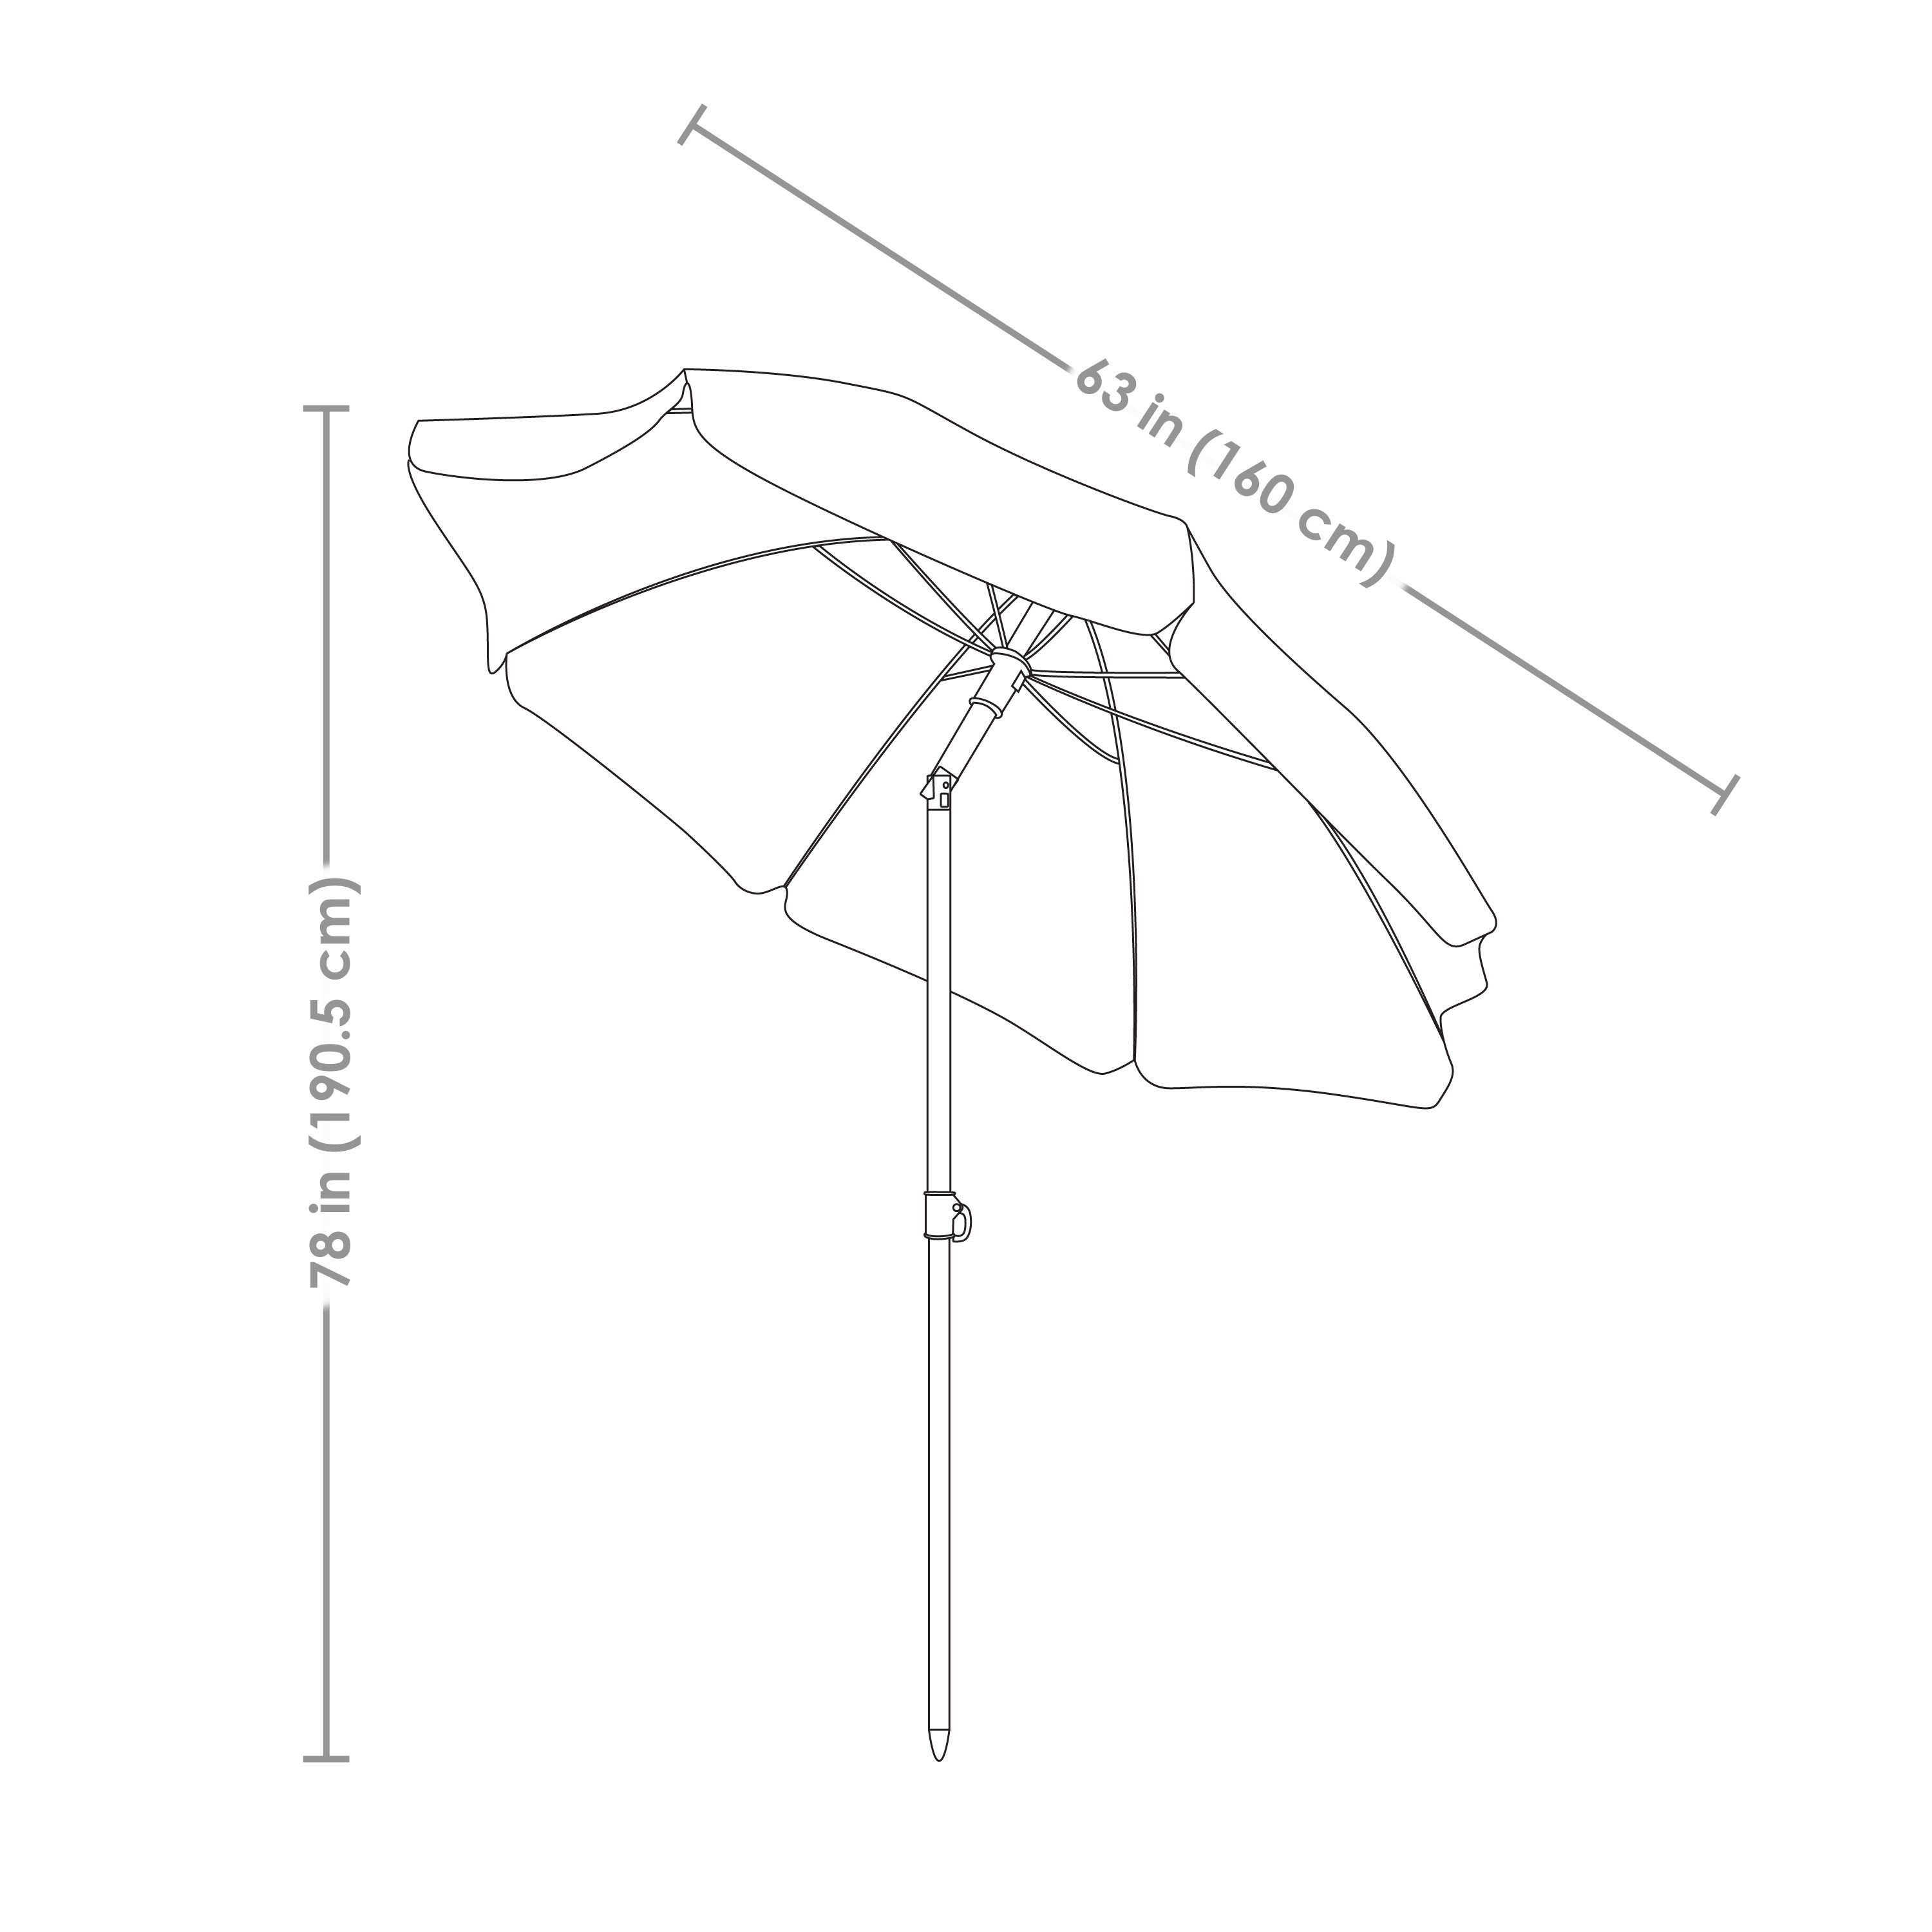 Sunnydaze Decor 5-Foot Beach Umbrella with Tilt Function - Gray